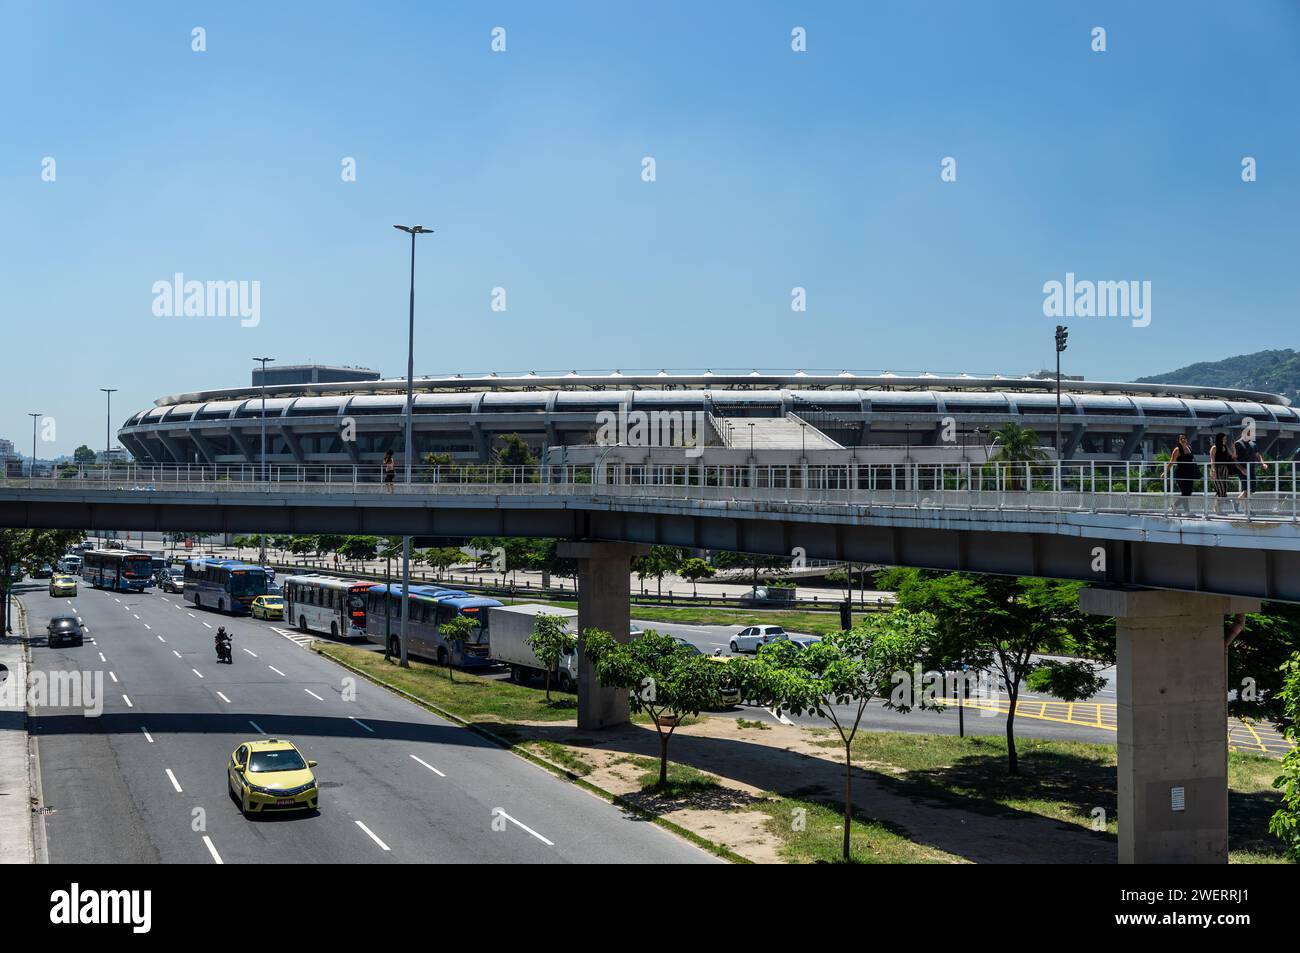 Fernsicht auf das Maracana-Stadion, wie von der Fußgängerbrücke des Bahnhofs Maracana über die Rei Pele Avenue unter dem klaren blauen Himmel am Sommermorgen gesehen. Stockfoto